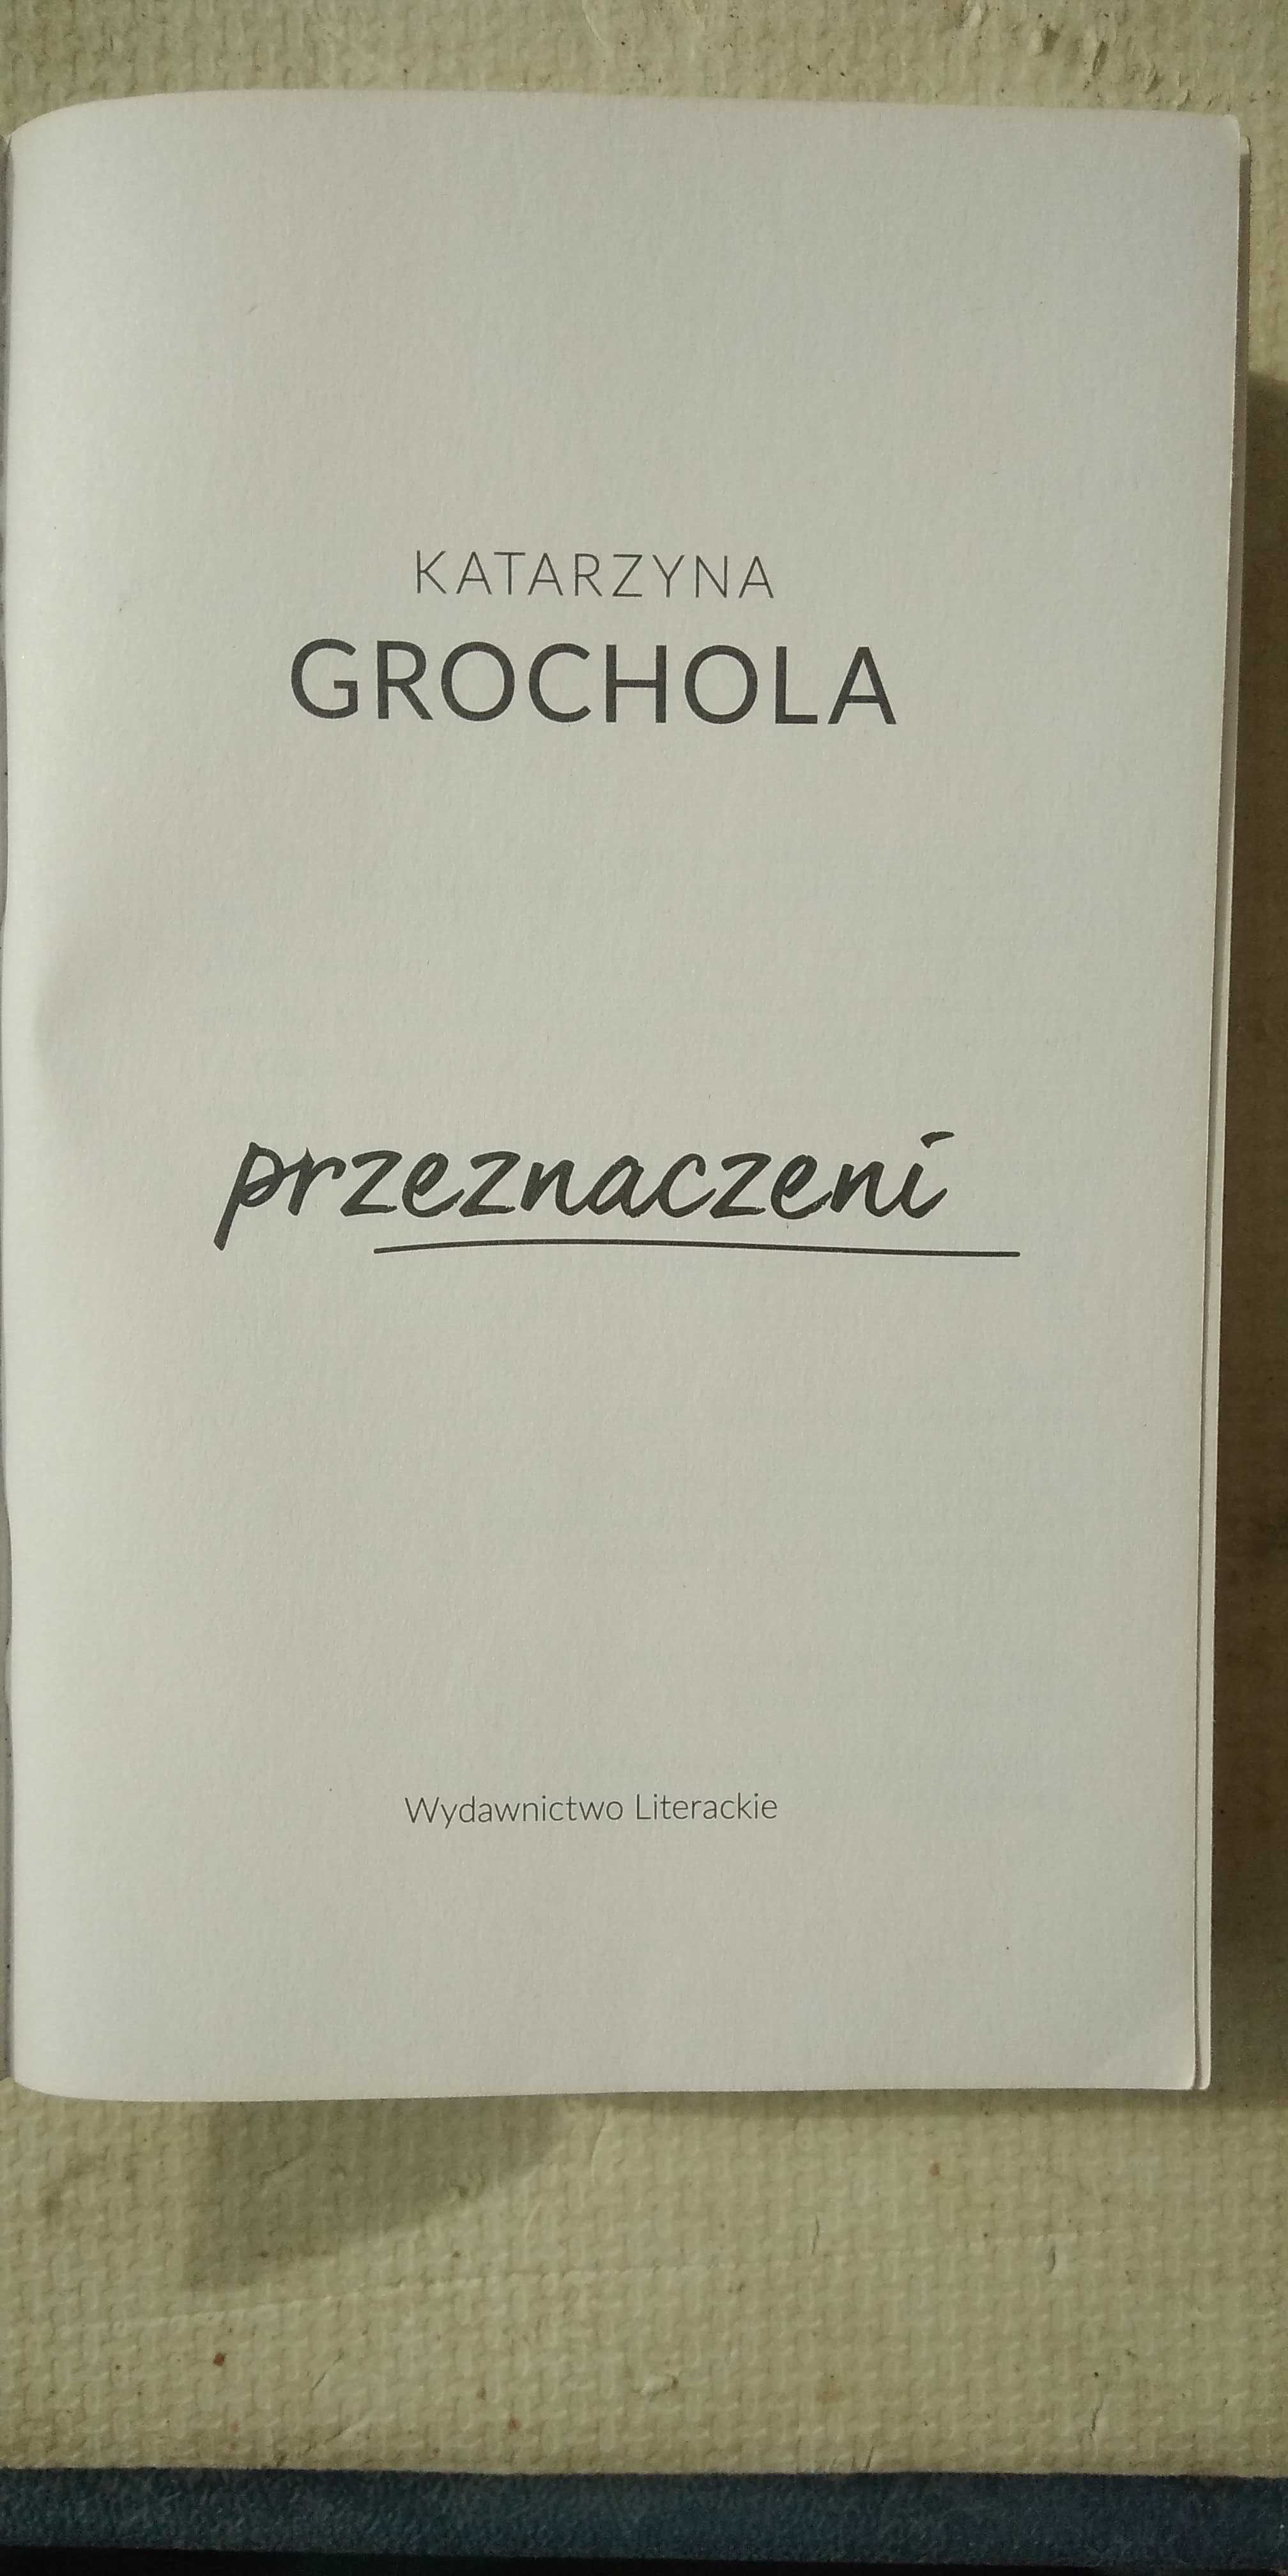 Książka Katarzyna Grochola "Przeznaczeni" - BESTSELLER